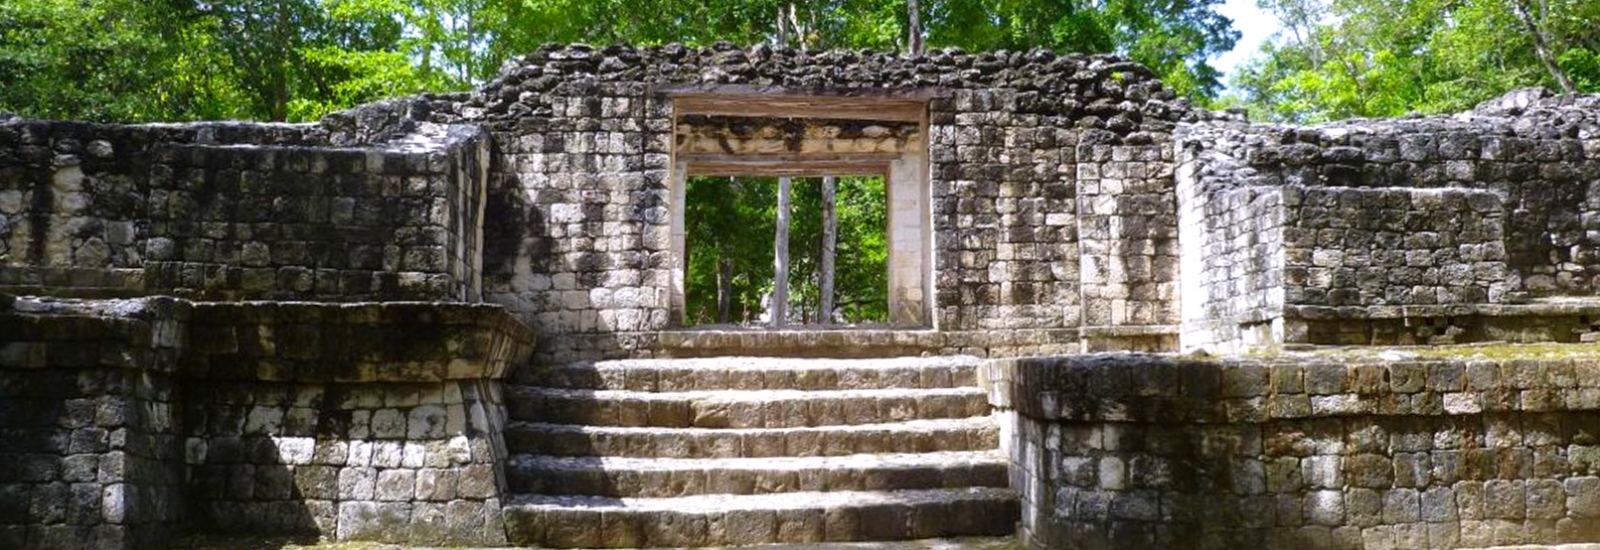 Balamkú, el Templo del Jaguar en Escárcega, Campeche